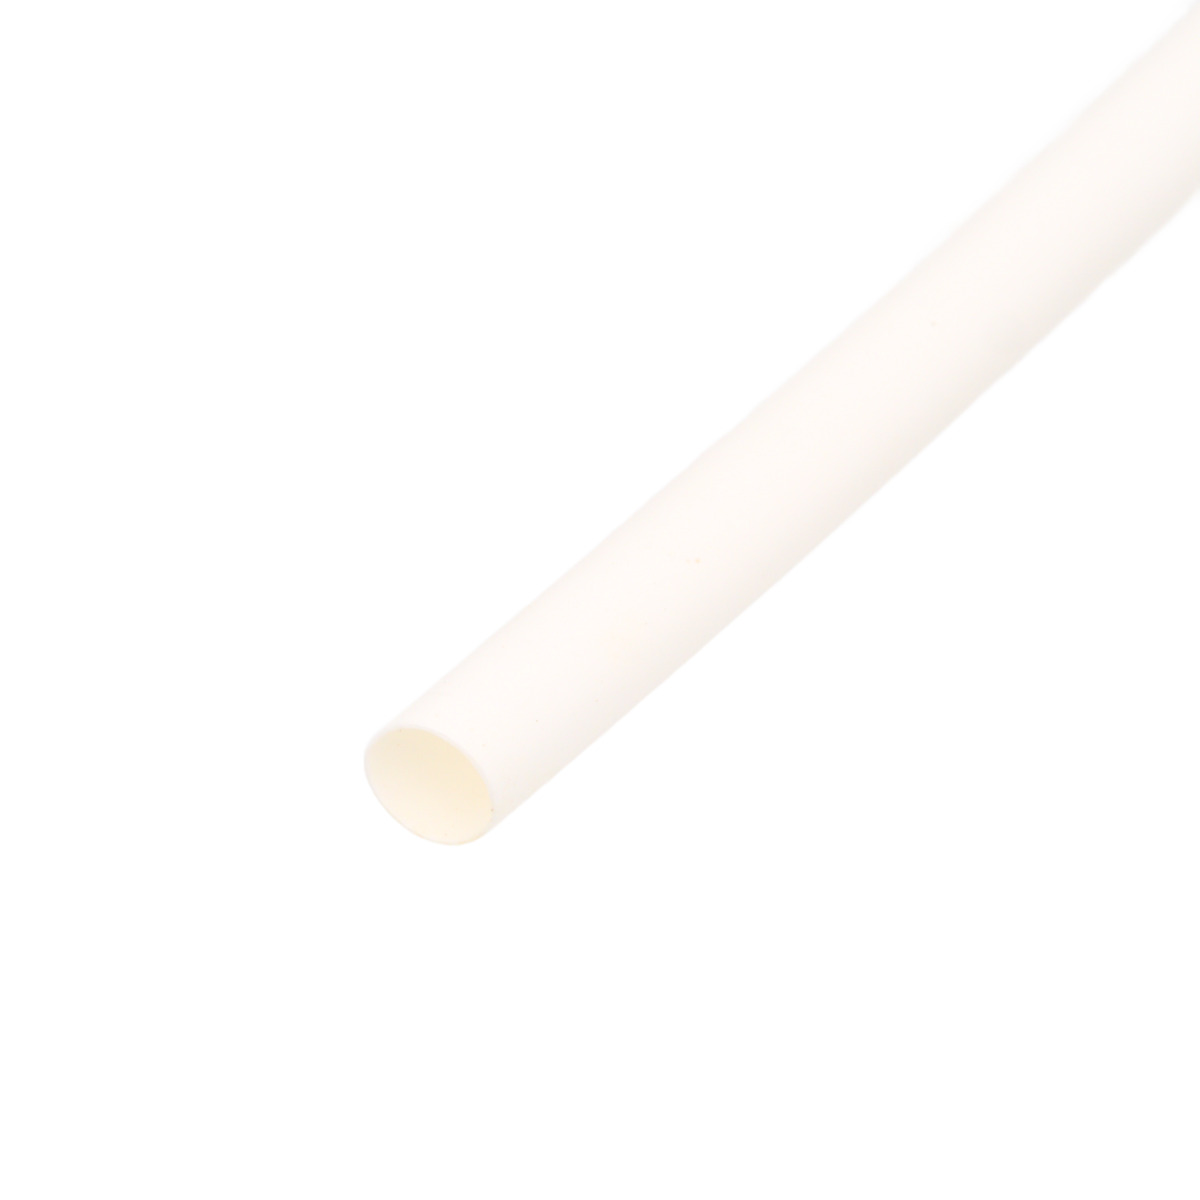 Pack de corte [1.2m] de tubo termorretráctil 2:1 Ø1.2mm blanco – Poliolefina libre de halógeno e ignífugo [x25]